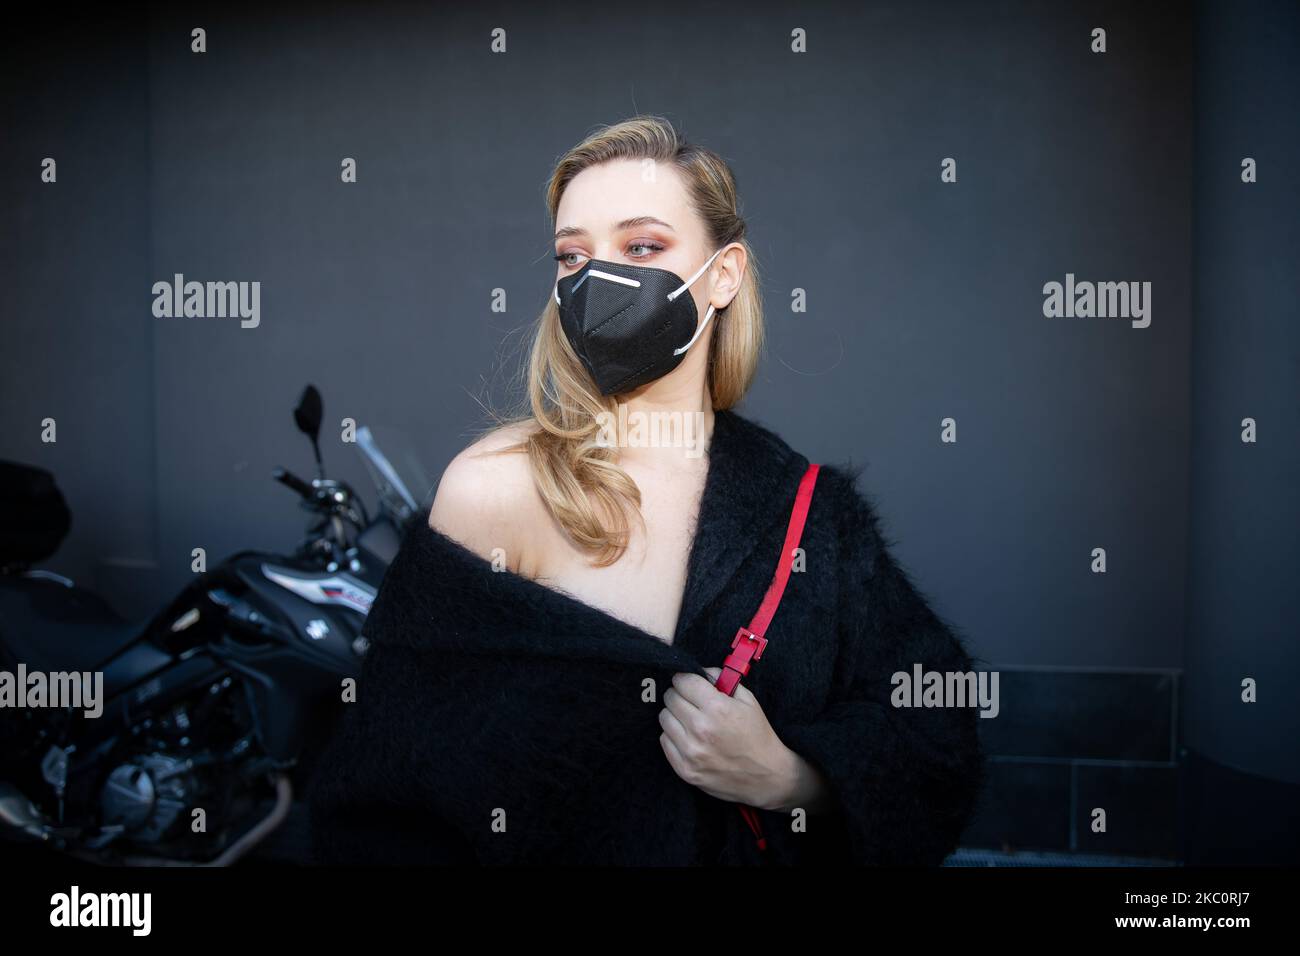 Katherine Langford participe au défilé de mode Valentino lors de la semaine de la mode de Milan Printemps/été 2021 sur 27 septembre 2020 à Milan, Italie (photo d'Alessandro Bremec/NurPhoto) Banque D'Images